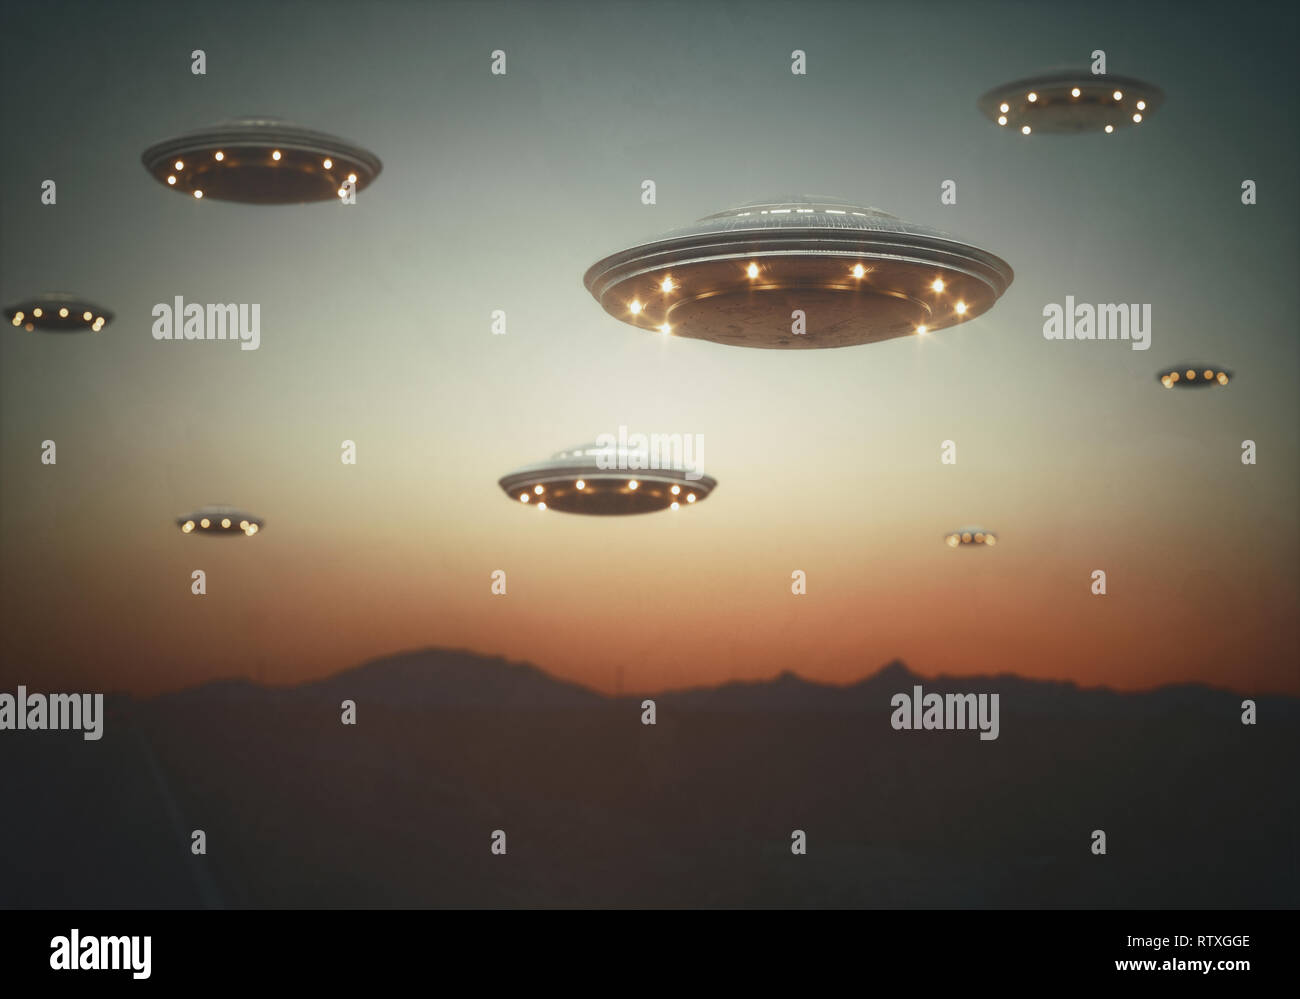 Invasion von außerirdischen Raumschiffen bei Sonnenuntergang, Illustration. Stockfoto